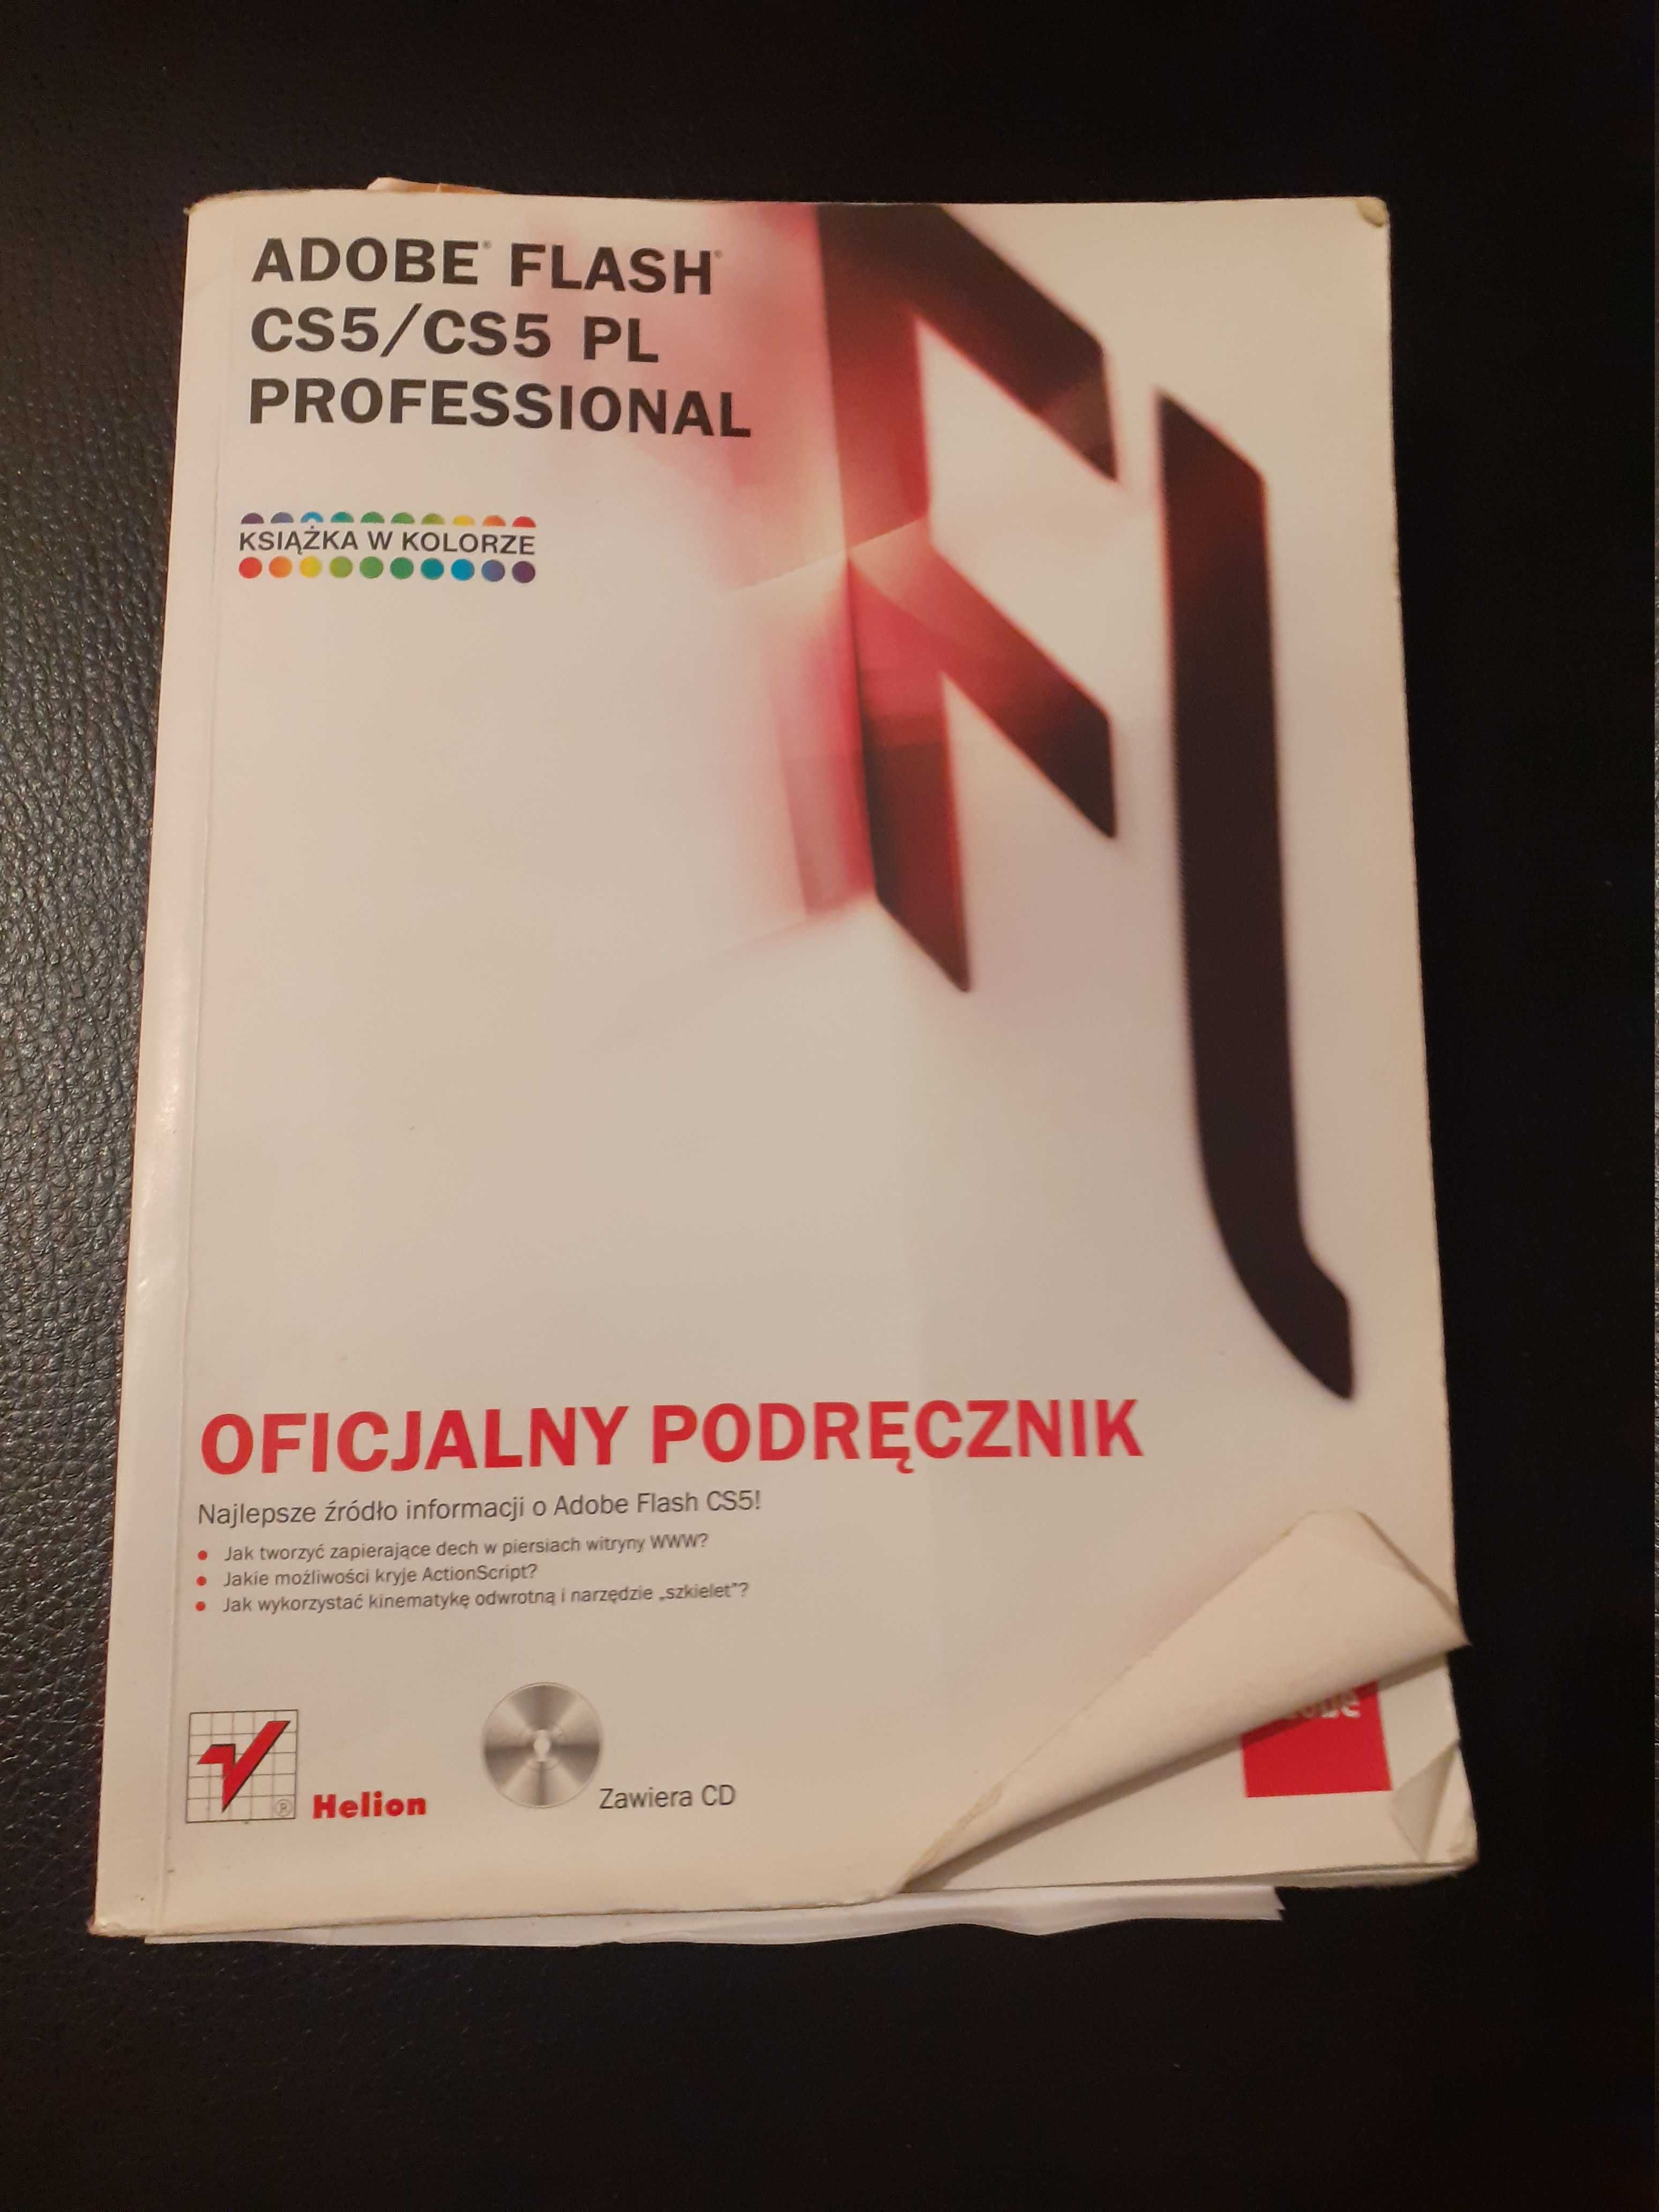 Adobe Flash CS5 Professhional - oficjalny podręcznik PL + Płyta CD!